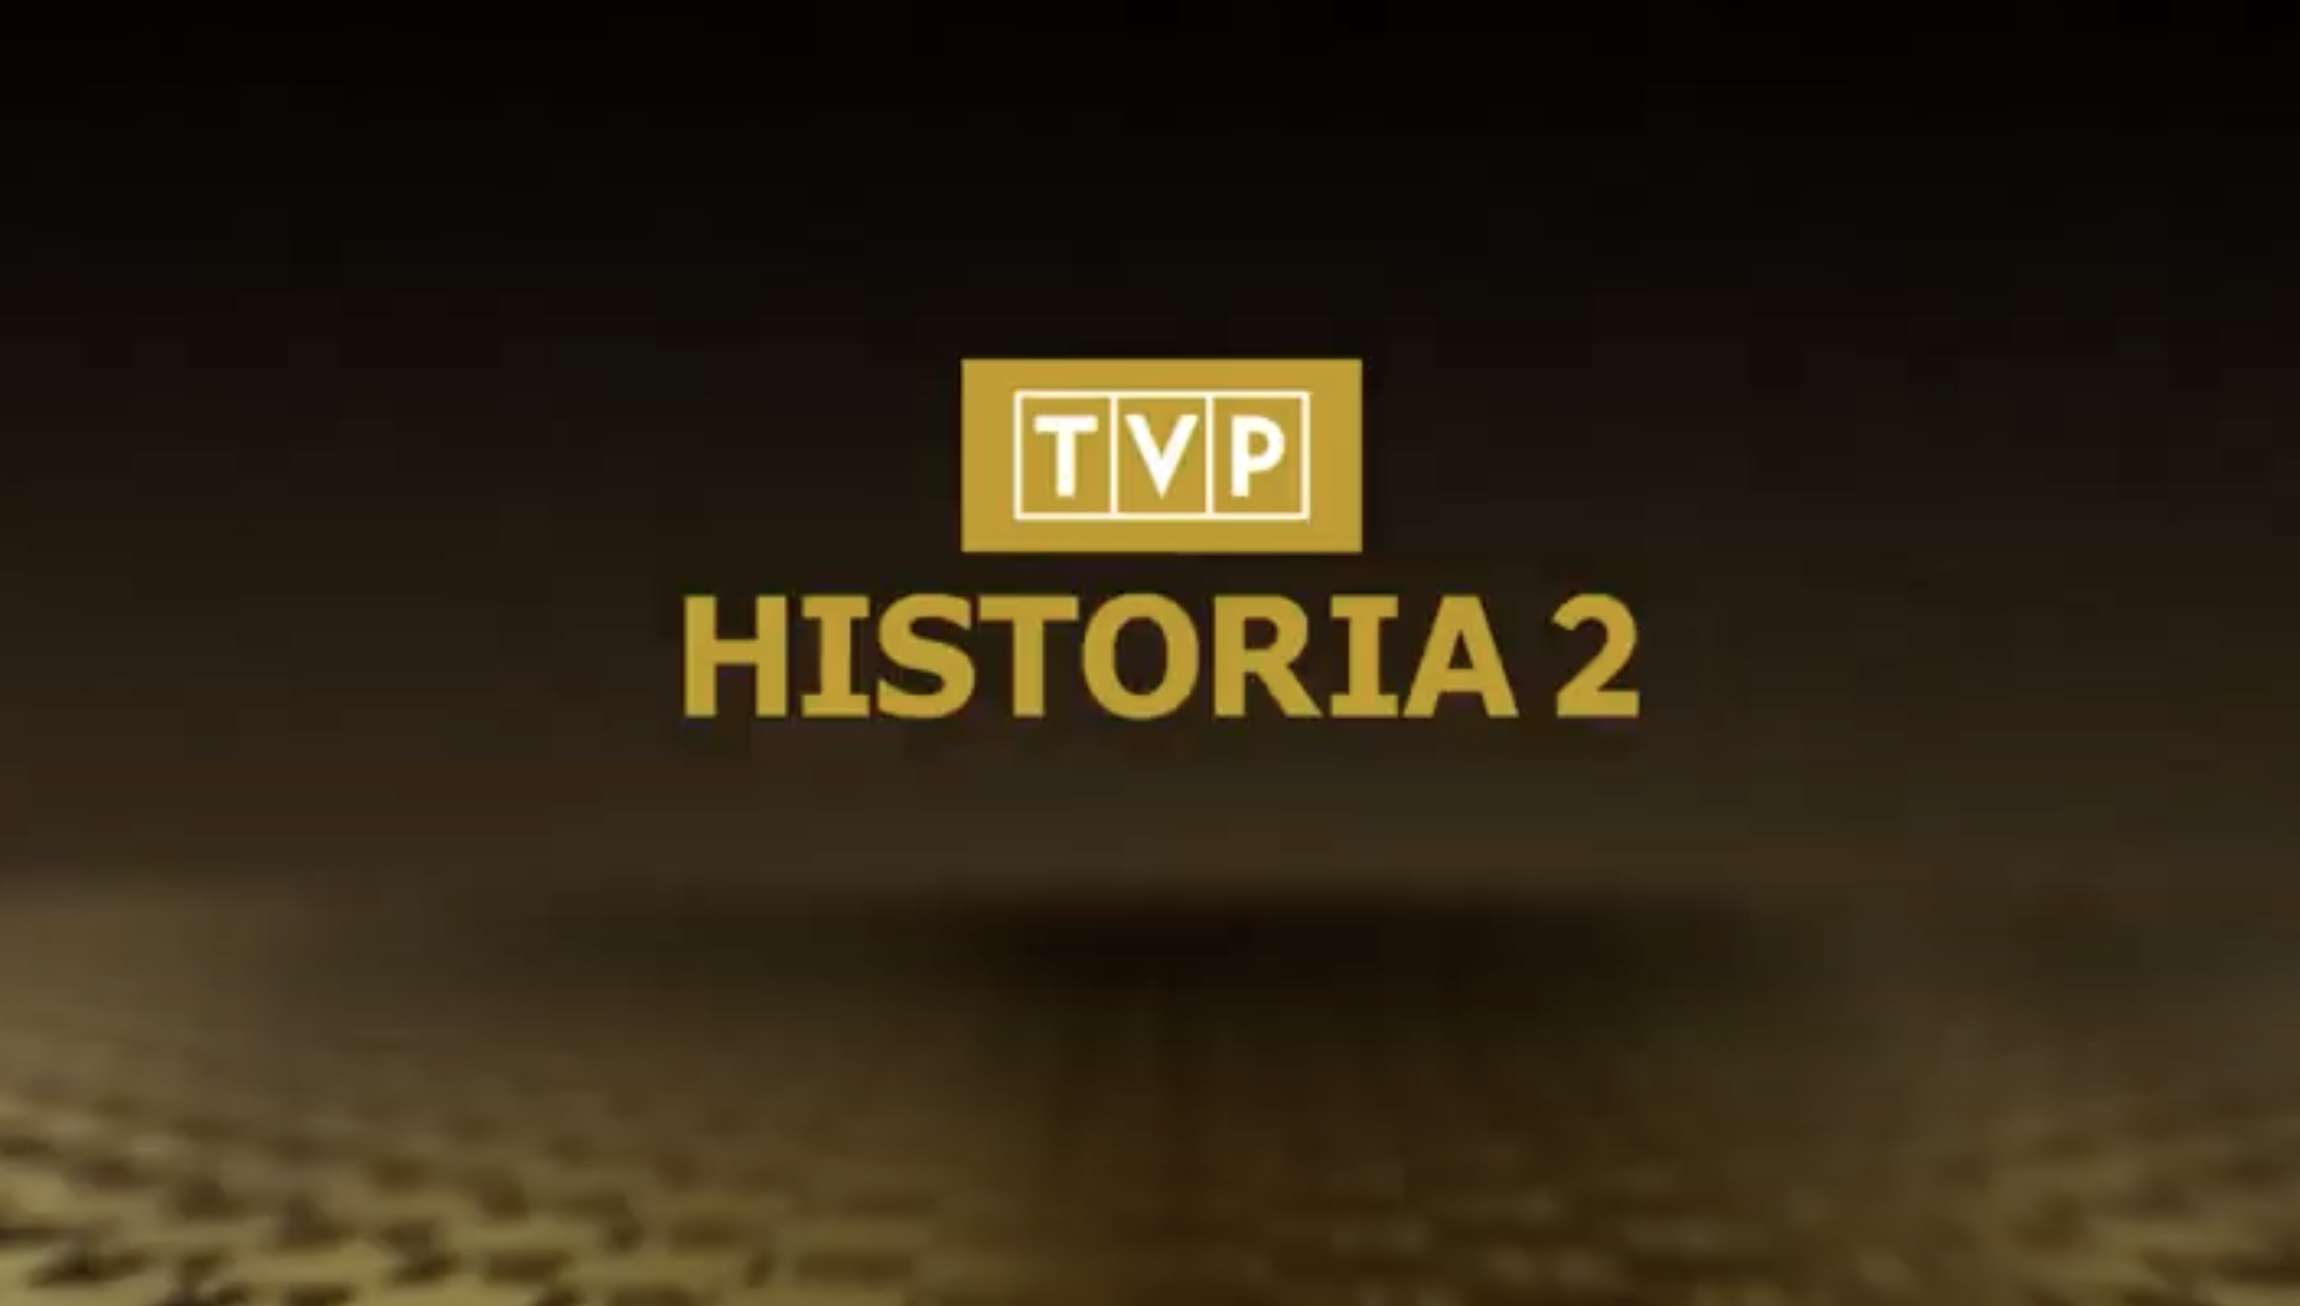 Wystartował nowy kanał TVP Historia 2! Gdzie można oglądać i co znajdziemy w ramówce?